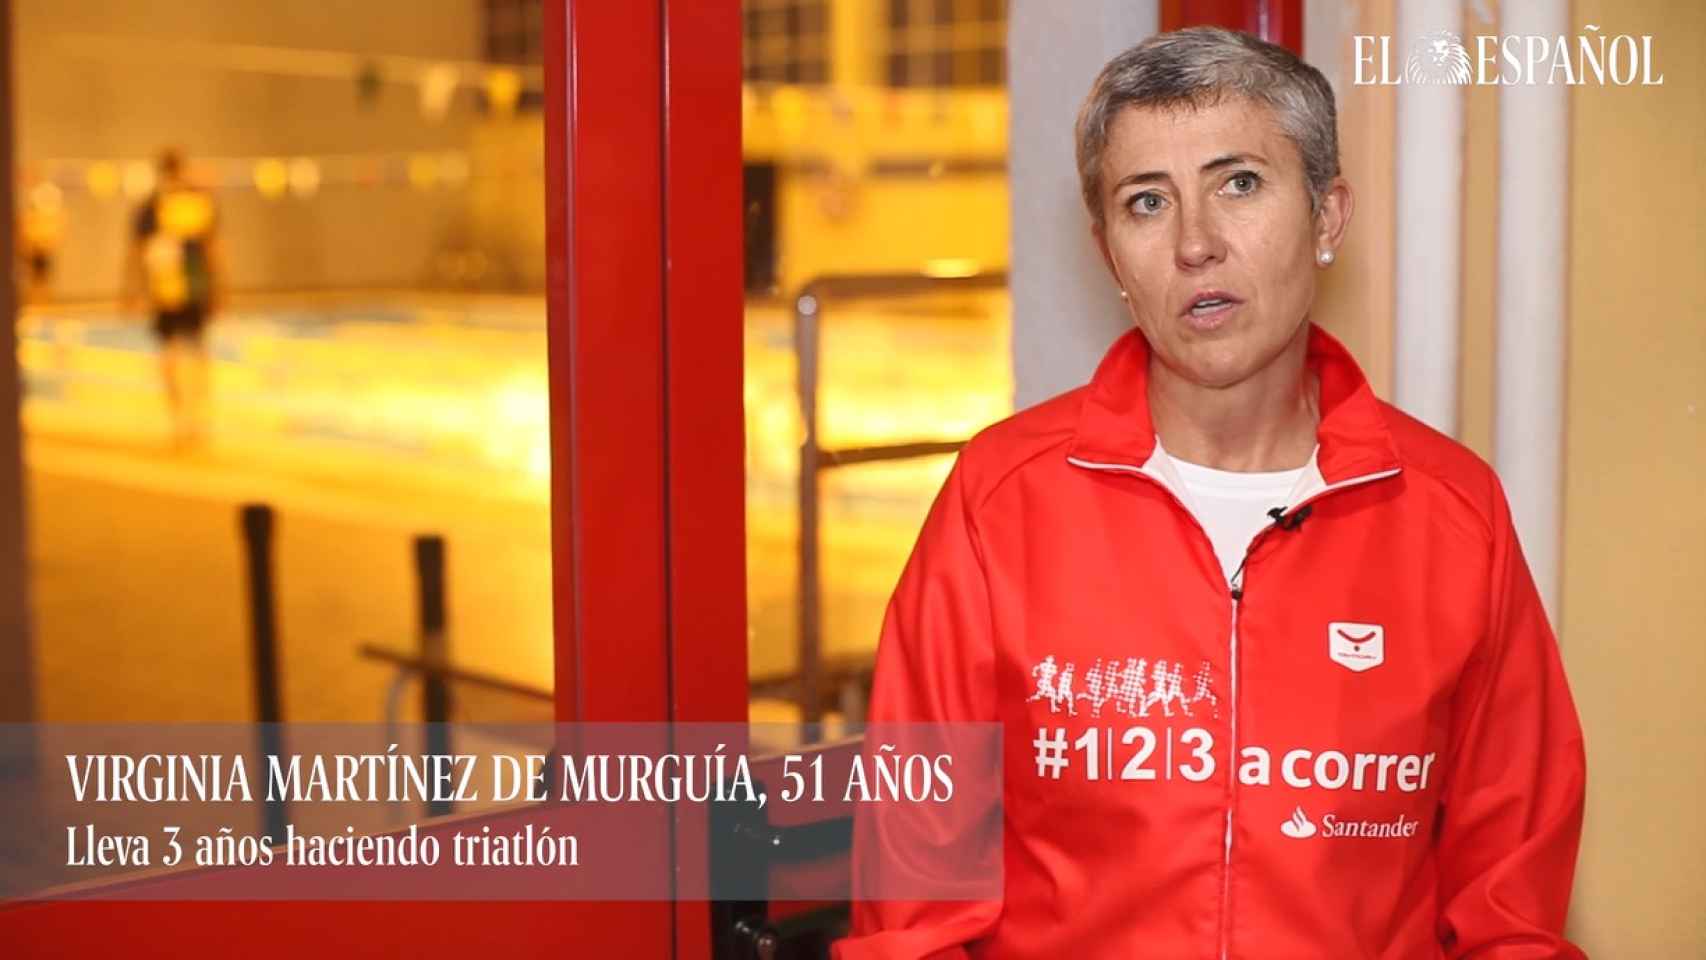 Virginia Martínez de Murguía